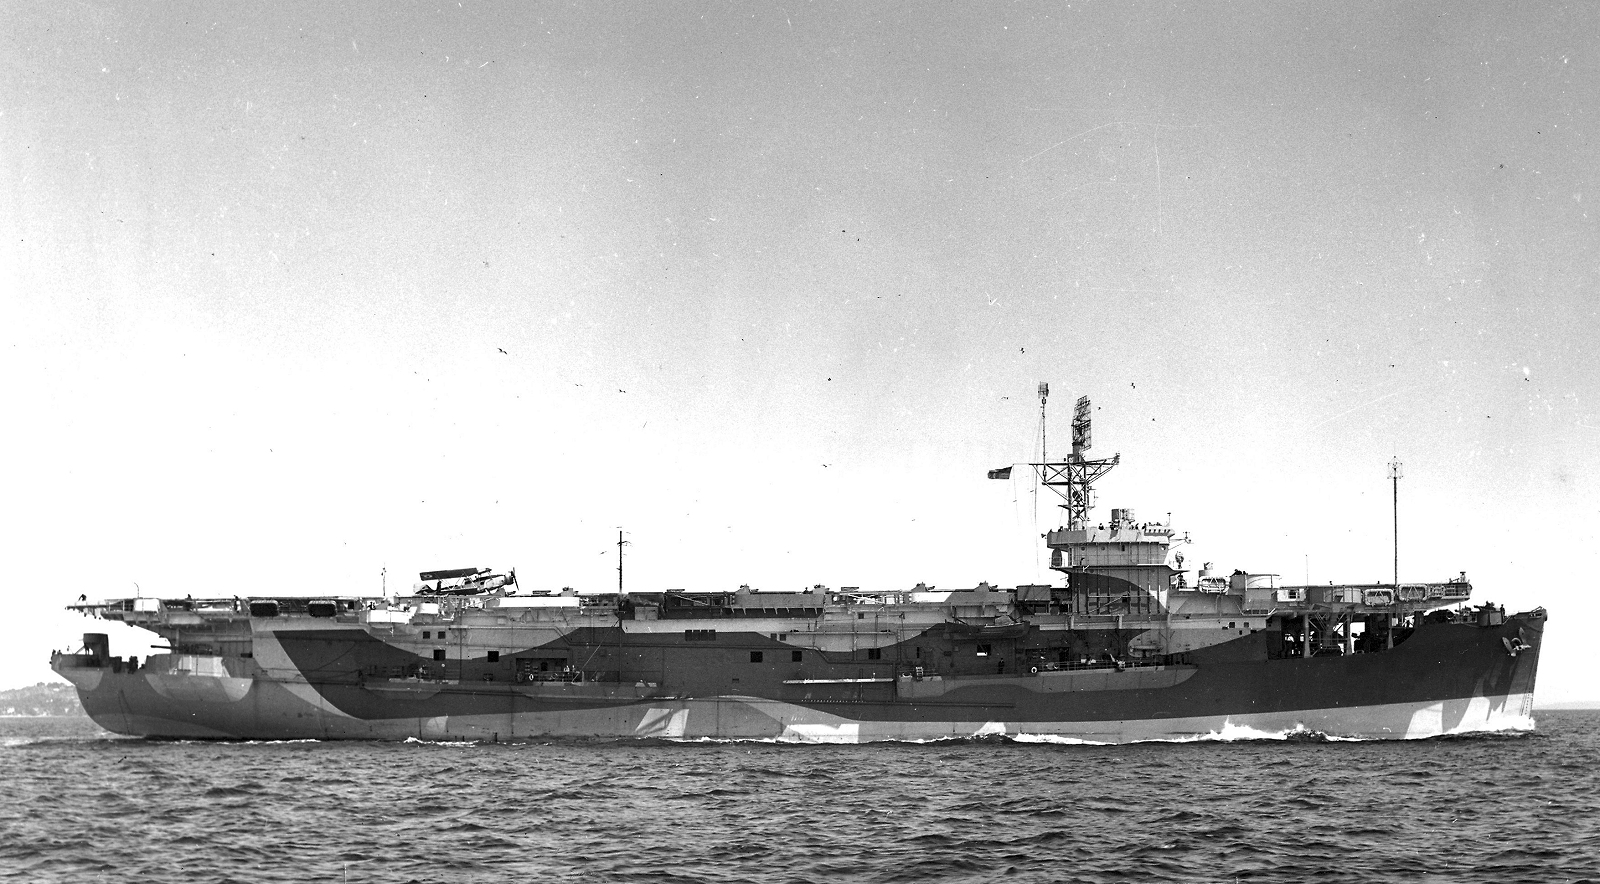 HMS Puncher at sea June 1944